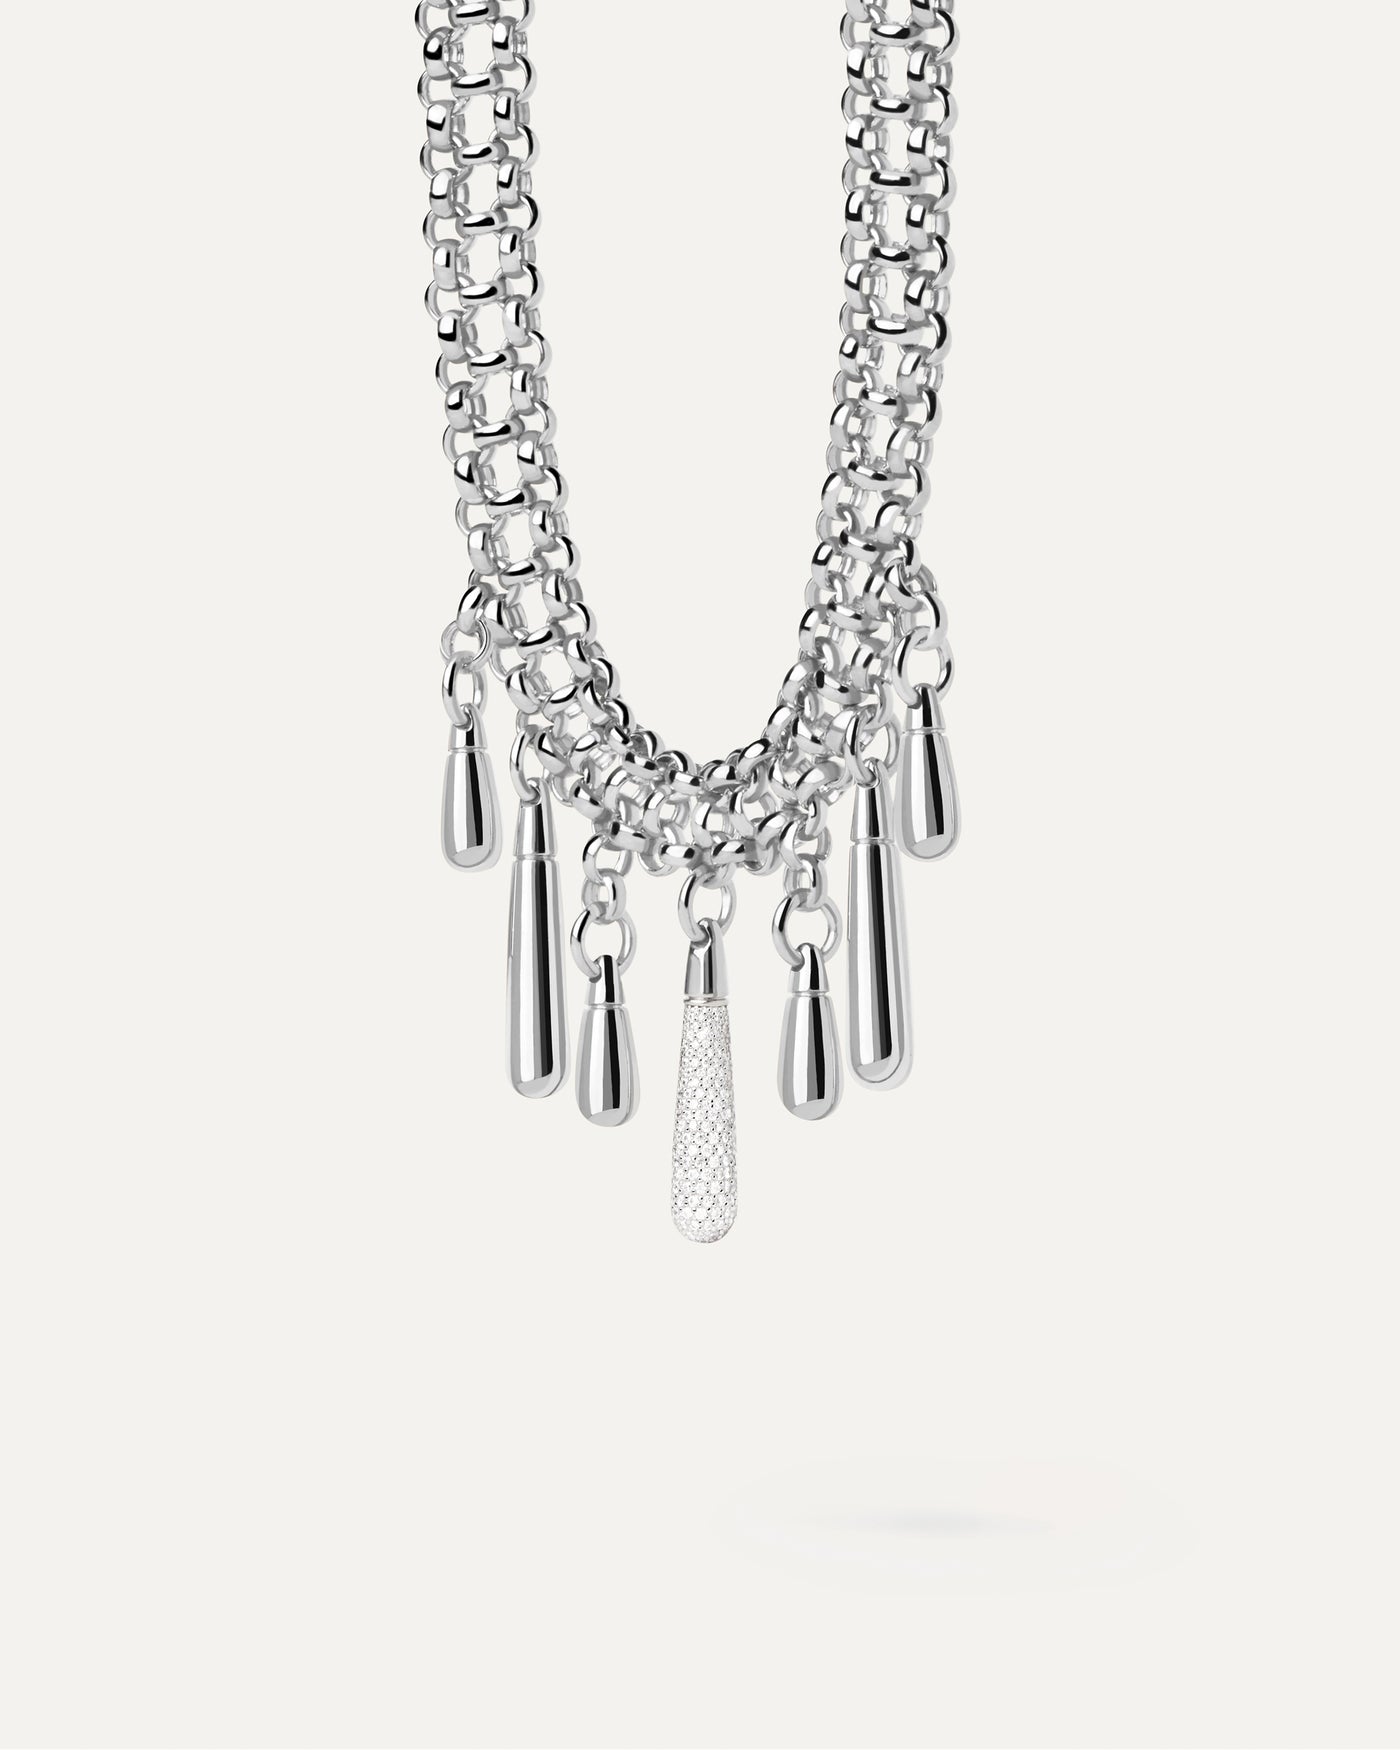 Luxury Rhinestone Necklace | Chunky Rhinestone Necklace | Rhinestone Choker  Necklace - Necklace - Aliexpress